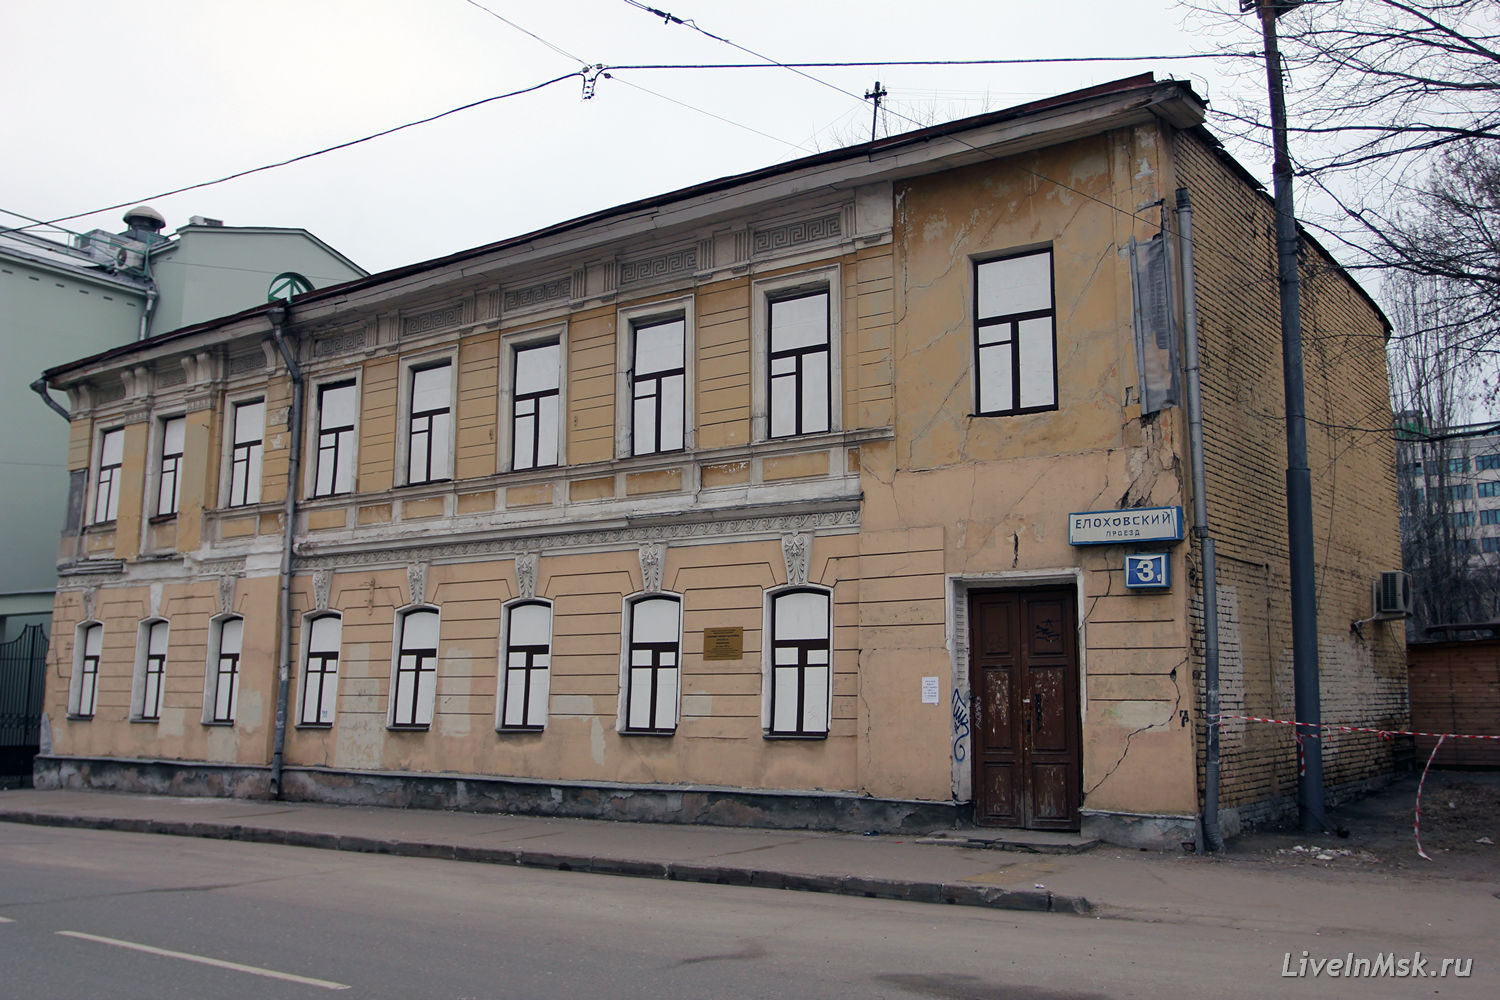 Жилой дом в Елоховском проезде, фото 2014 года